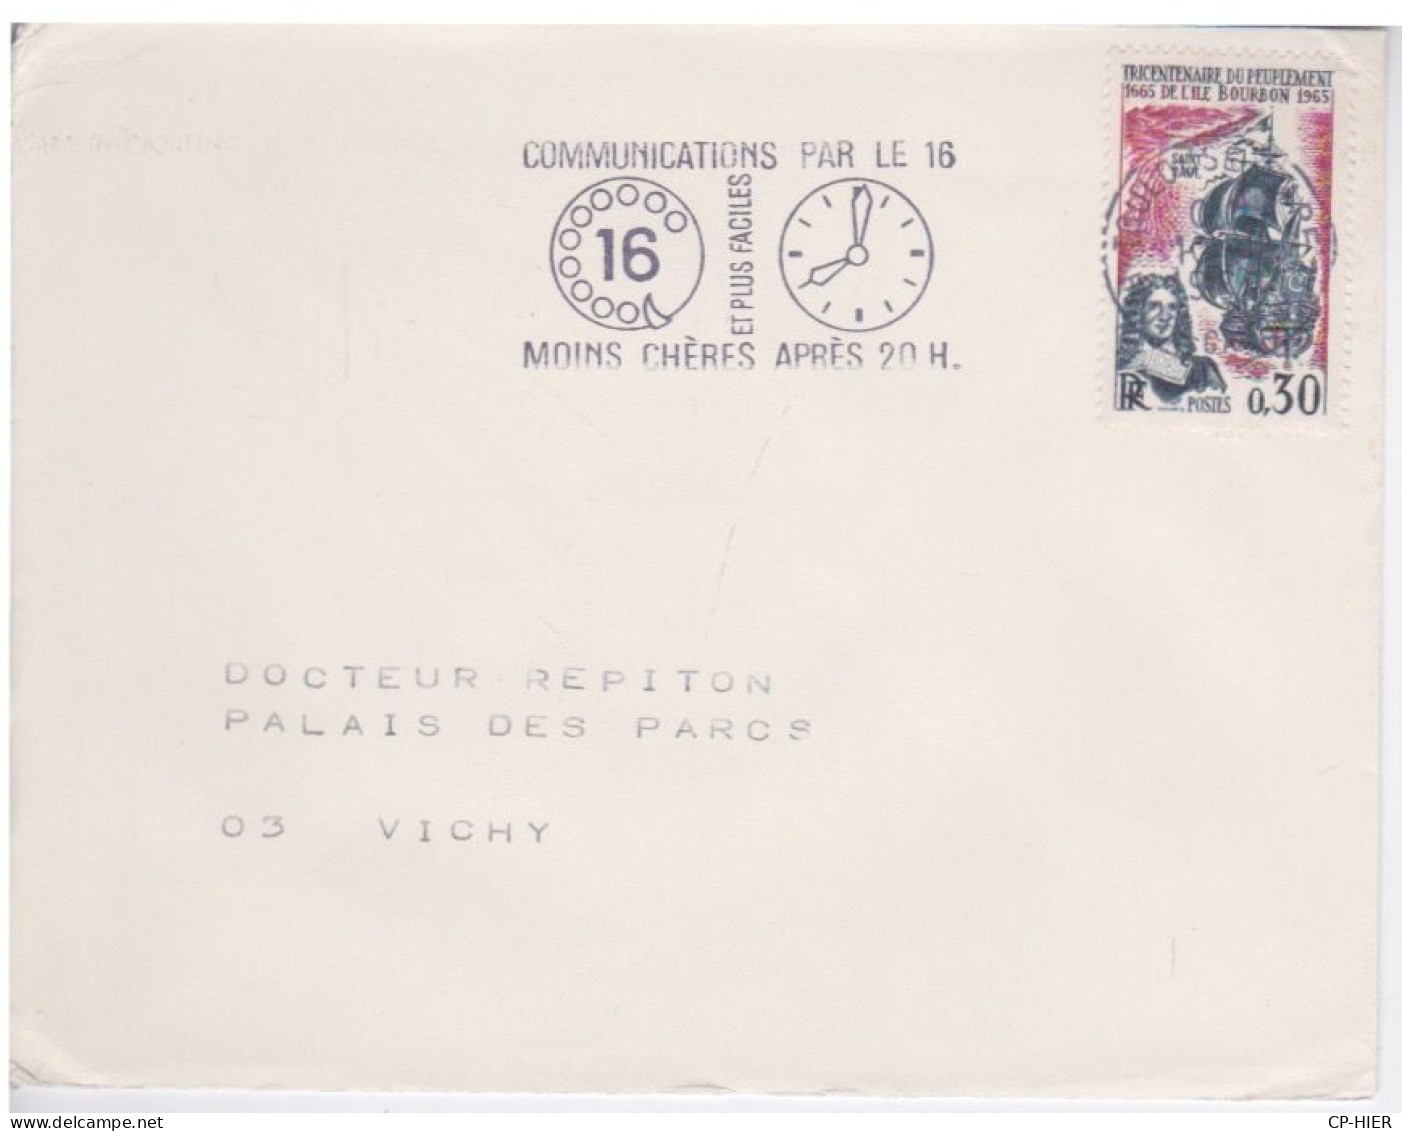 FRANCE - FLAMME COMMUNICATION PAR LE 16 - MOINS CHERE APRES 20H00 - TOULOUSE 1961 - Mechanical Postmarks (Advertisement)